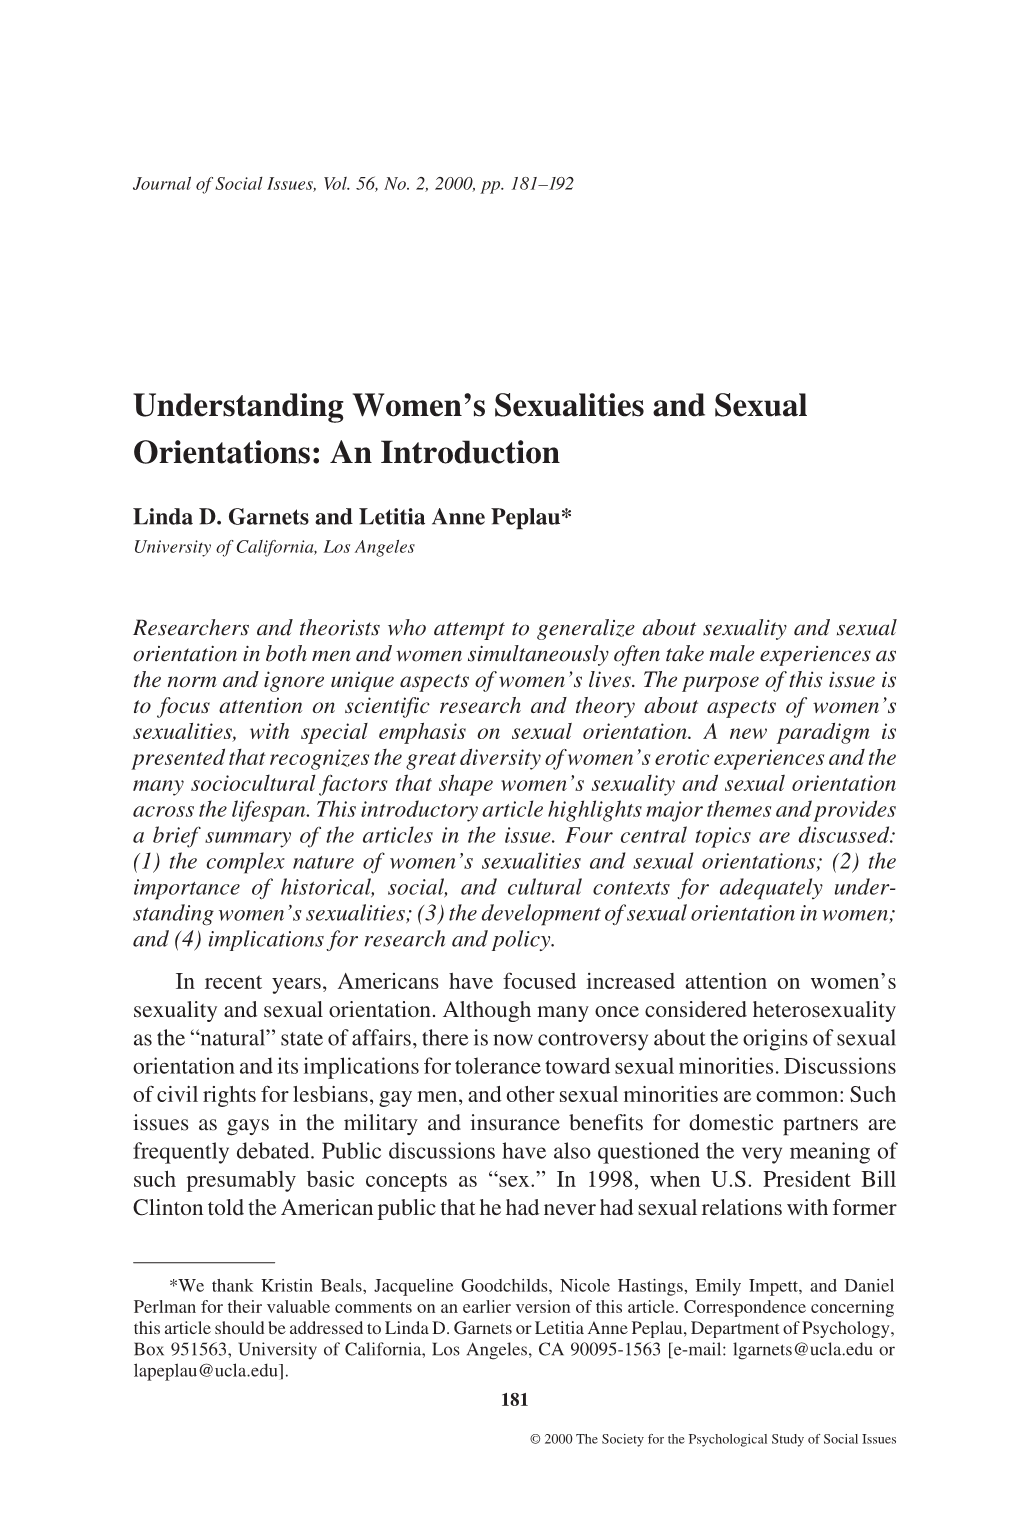 Understanding Women's Sexualities and Sexual Orientations